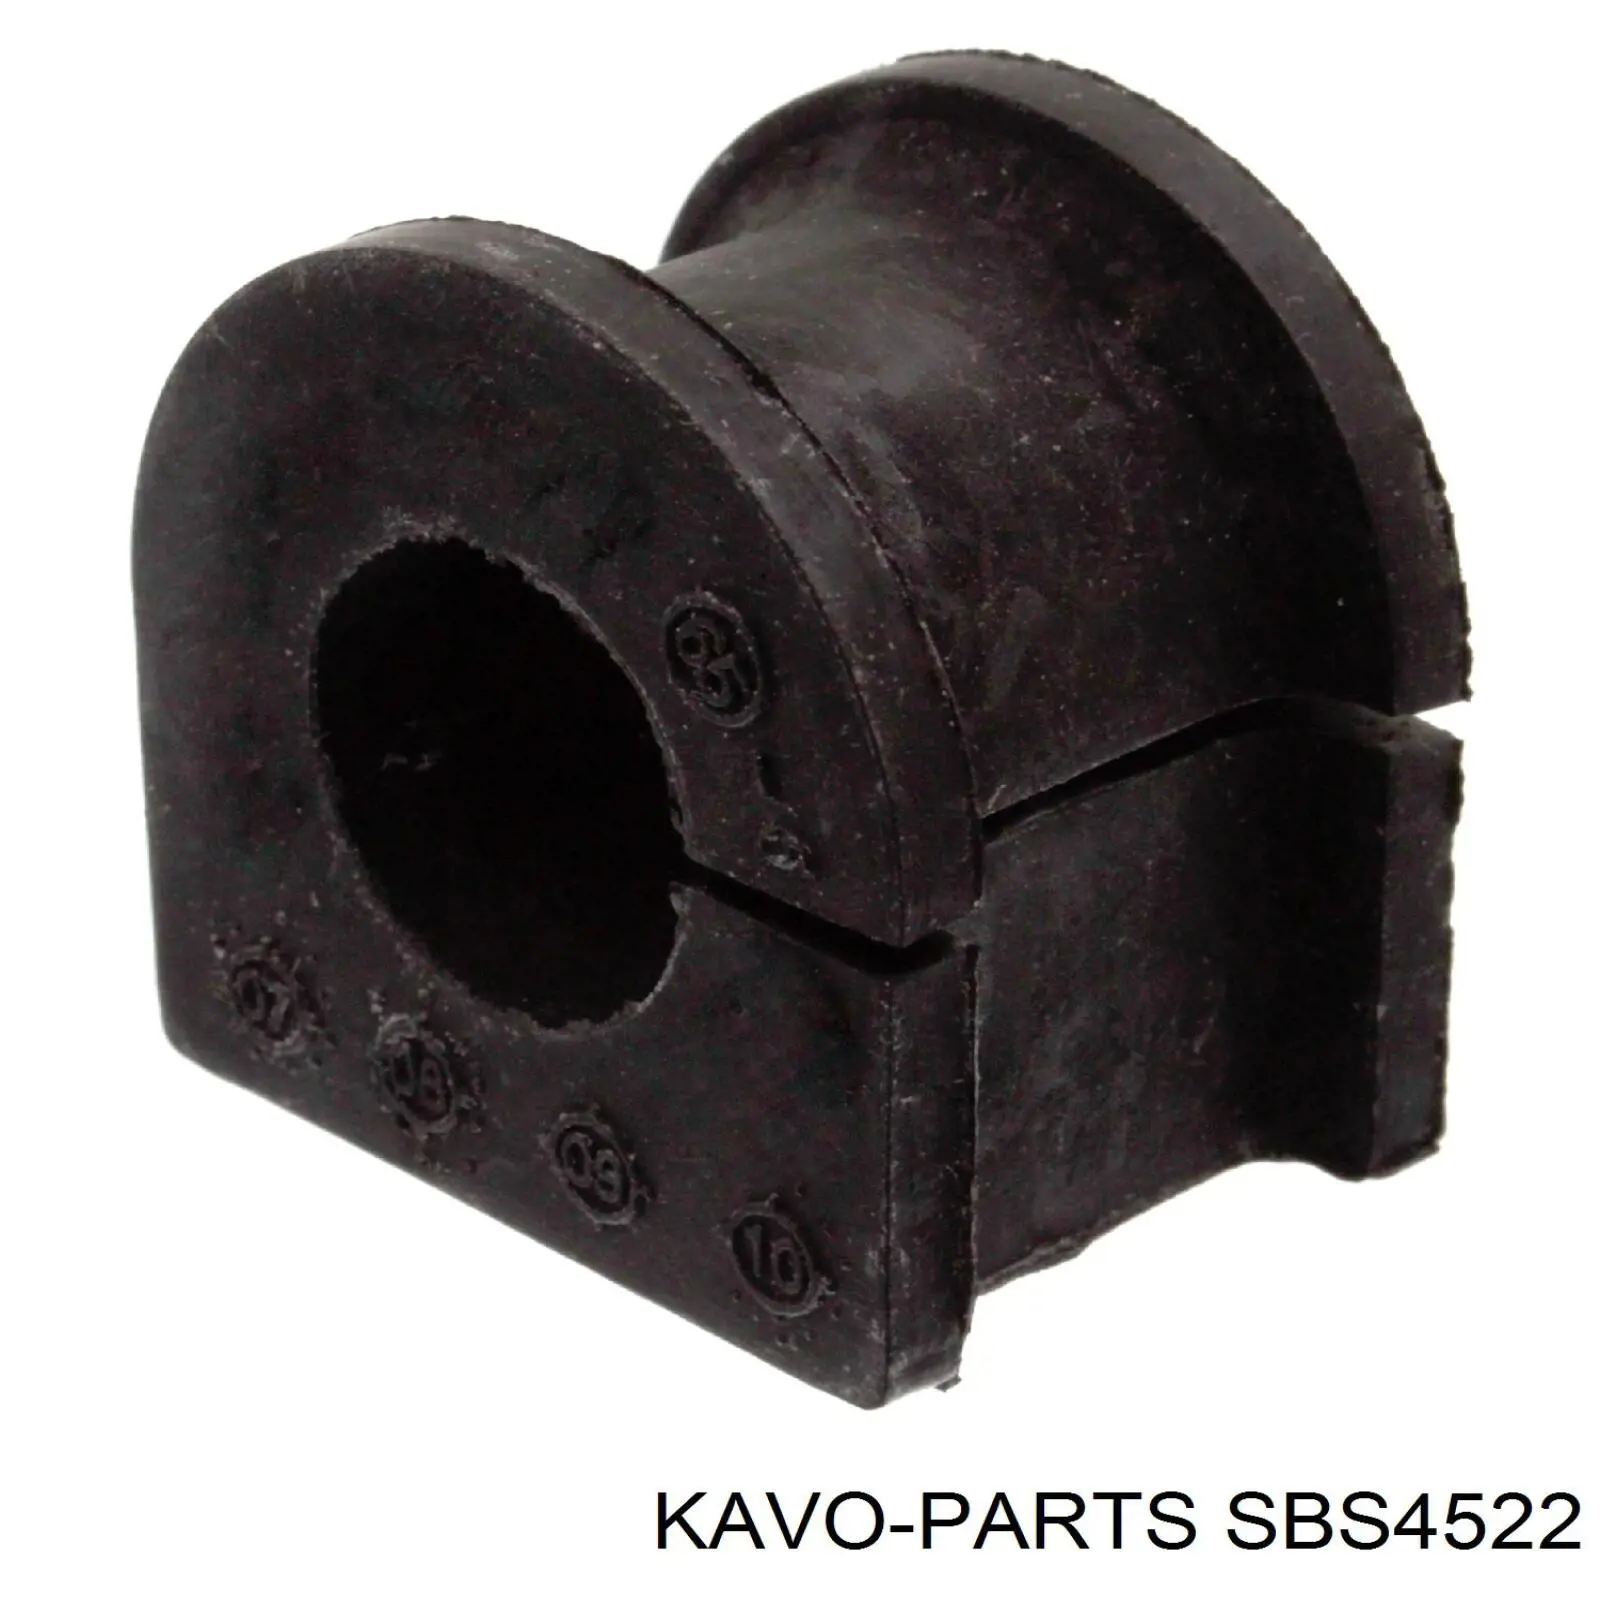 SBS-4522 Kavo Parts casquillo de barra estabilizadora delantera